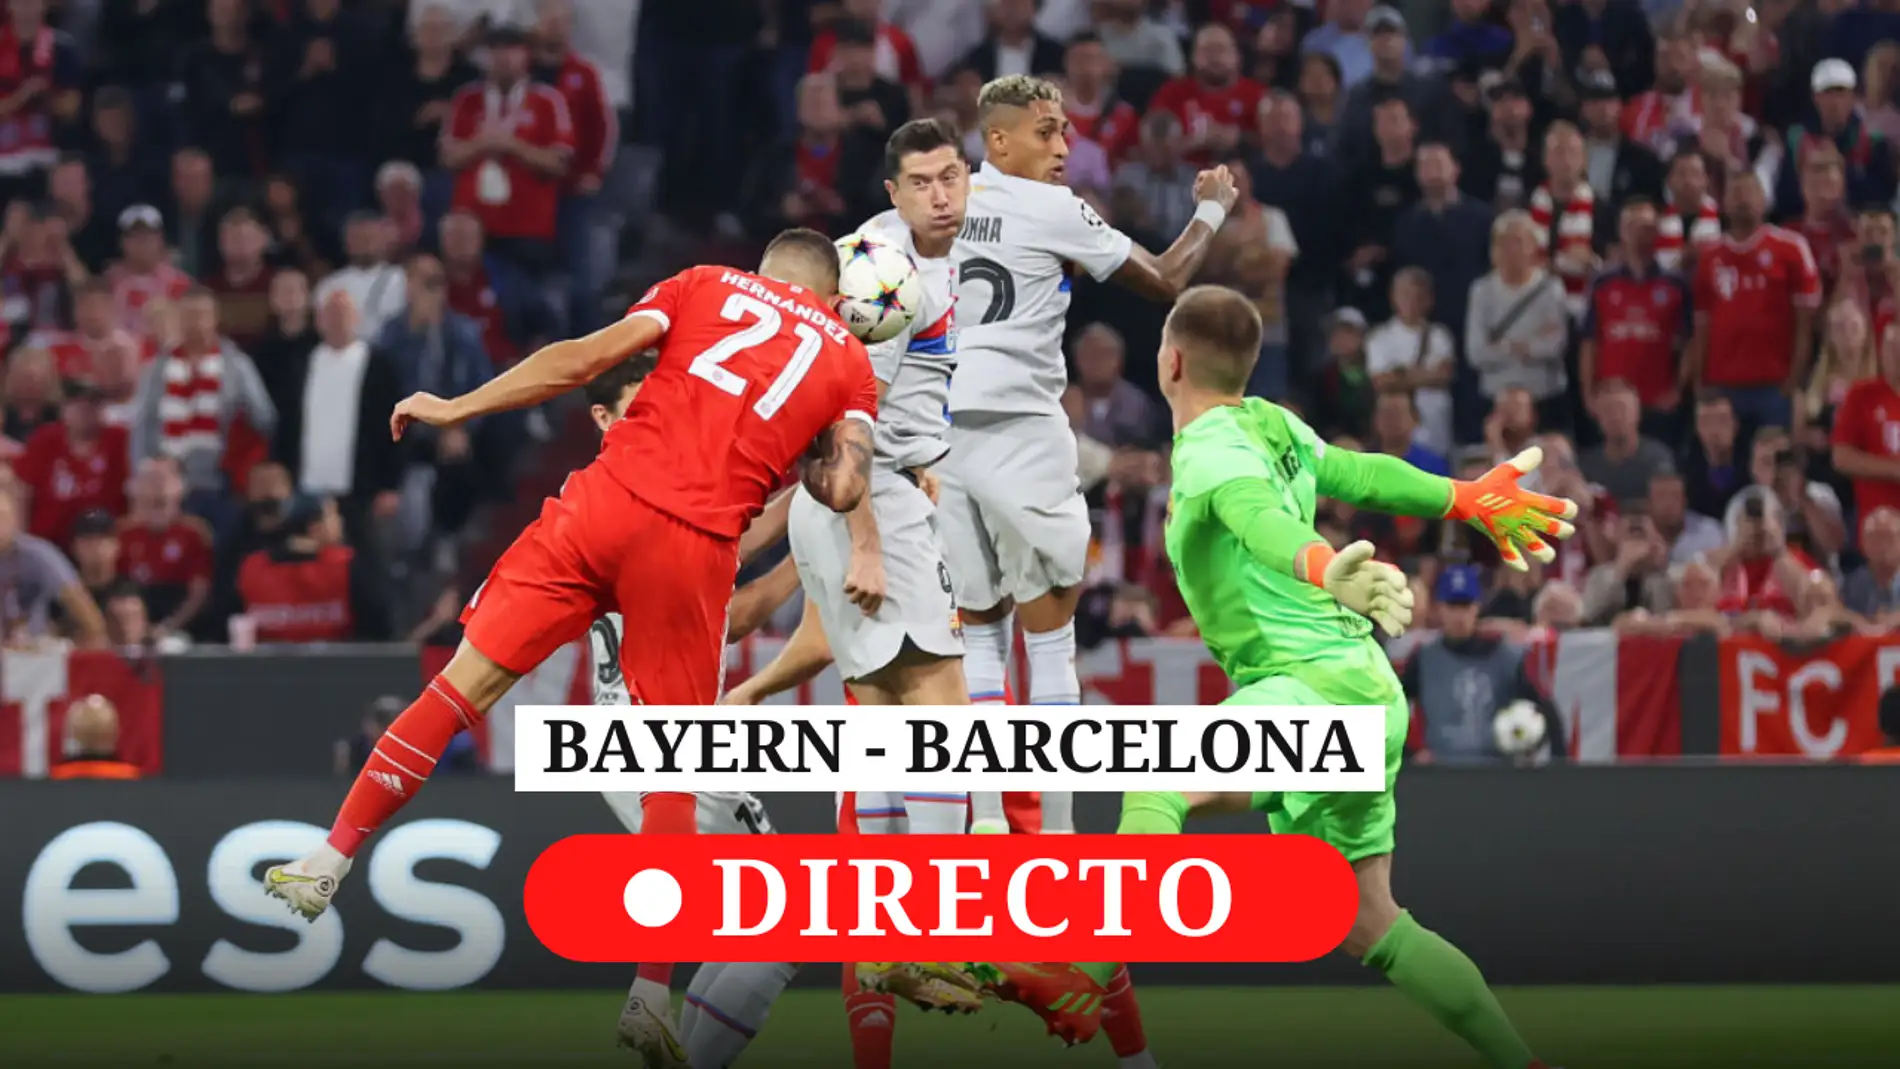 Bayern - Barcelona: resultado de hoy, análisis y comentarios del partido de Champions | Onda Radio